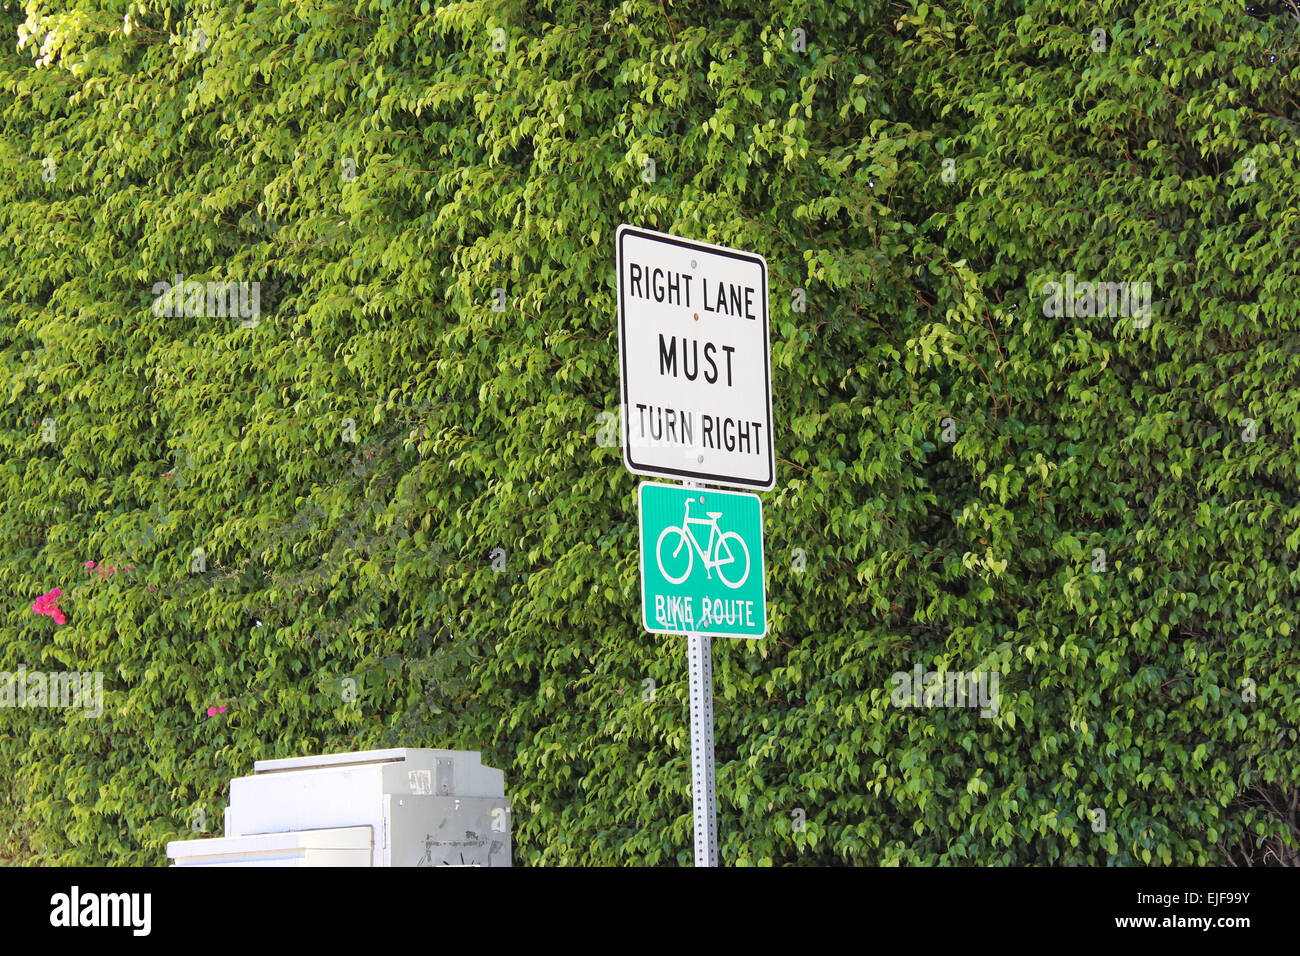 Code de la route - voie de droite doit tourner à droite. Bike Route. Road sign in California, USA Banque D'Images